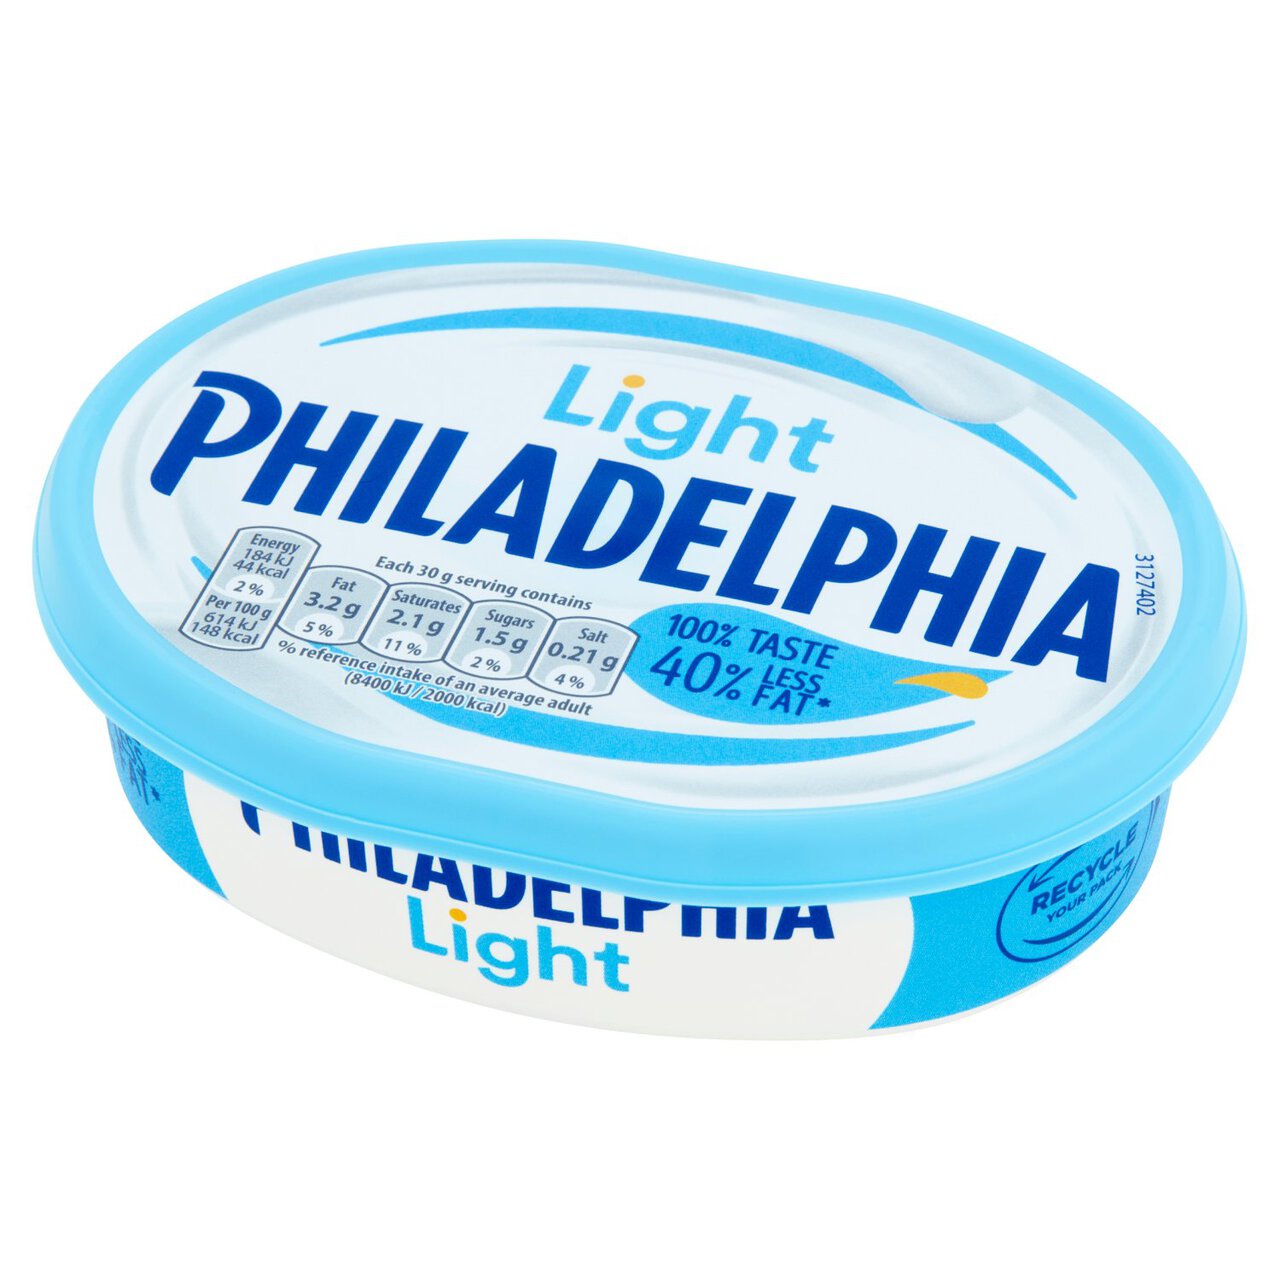 Philadelphia Light Soft Cheese 165g